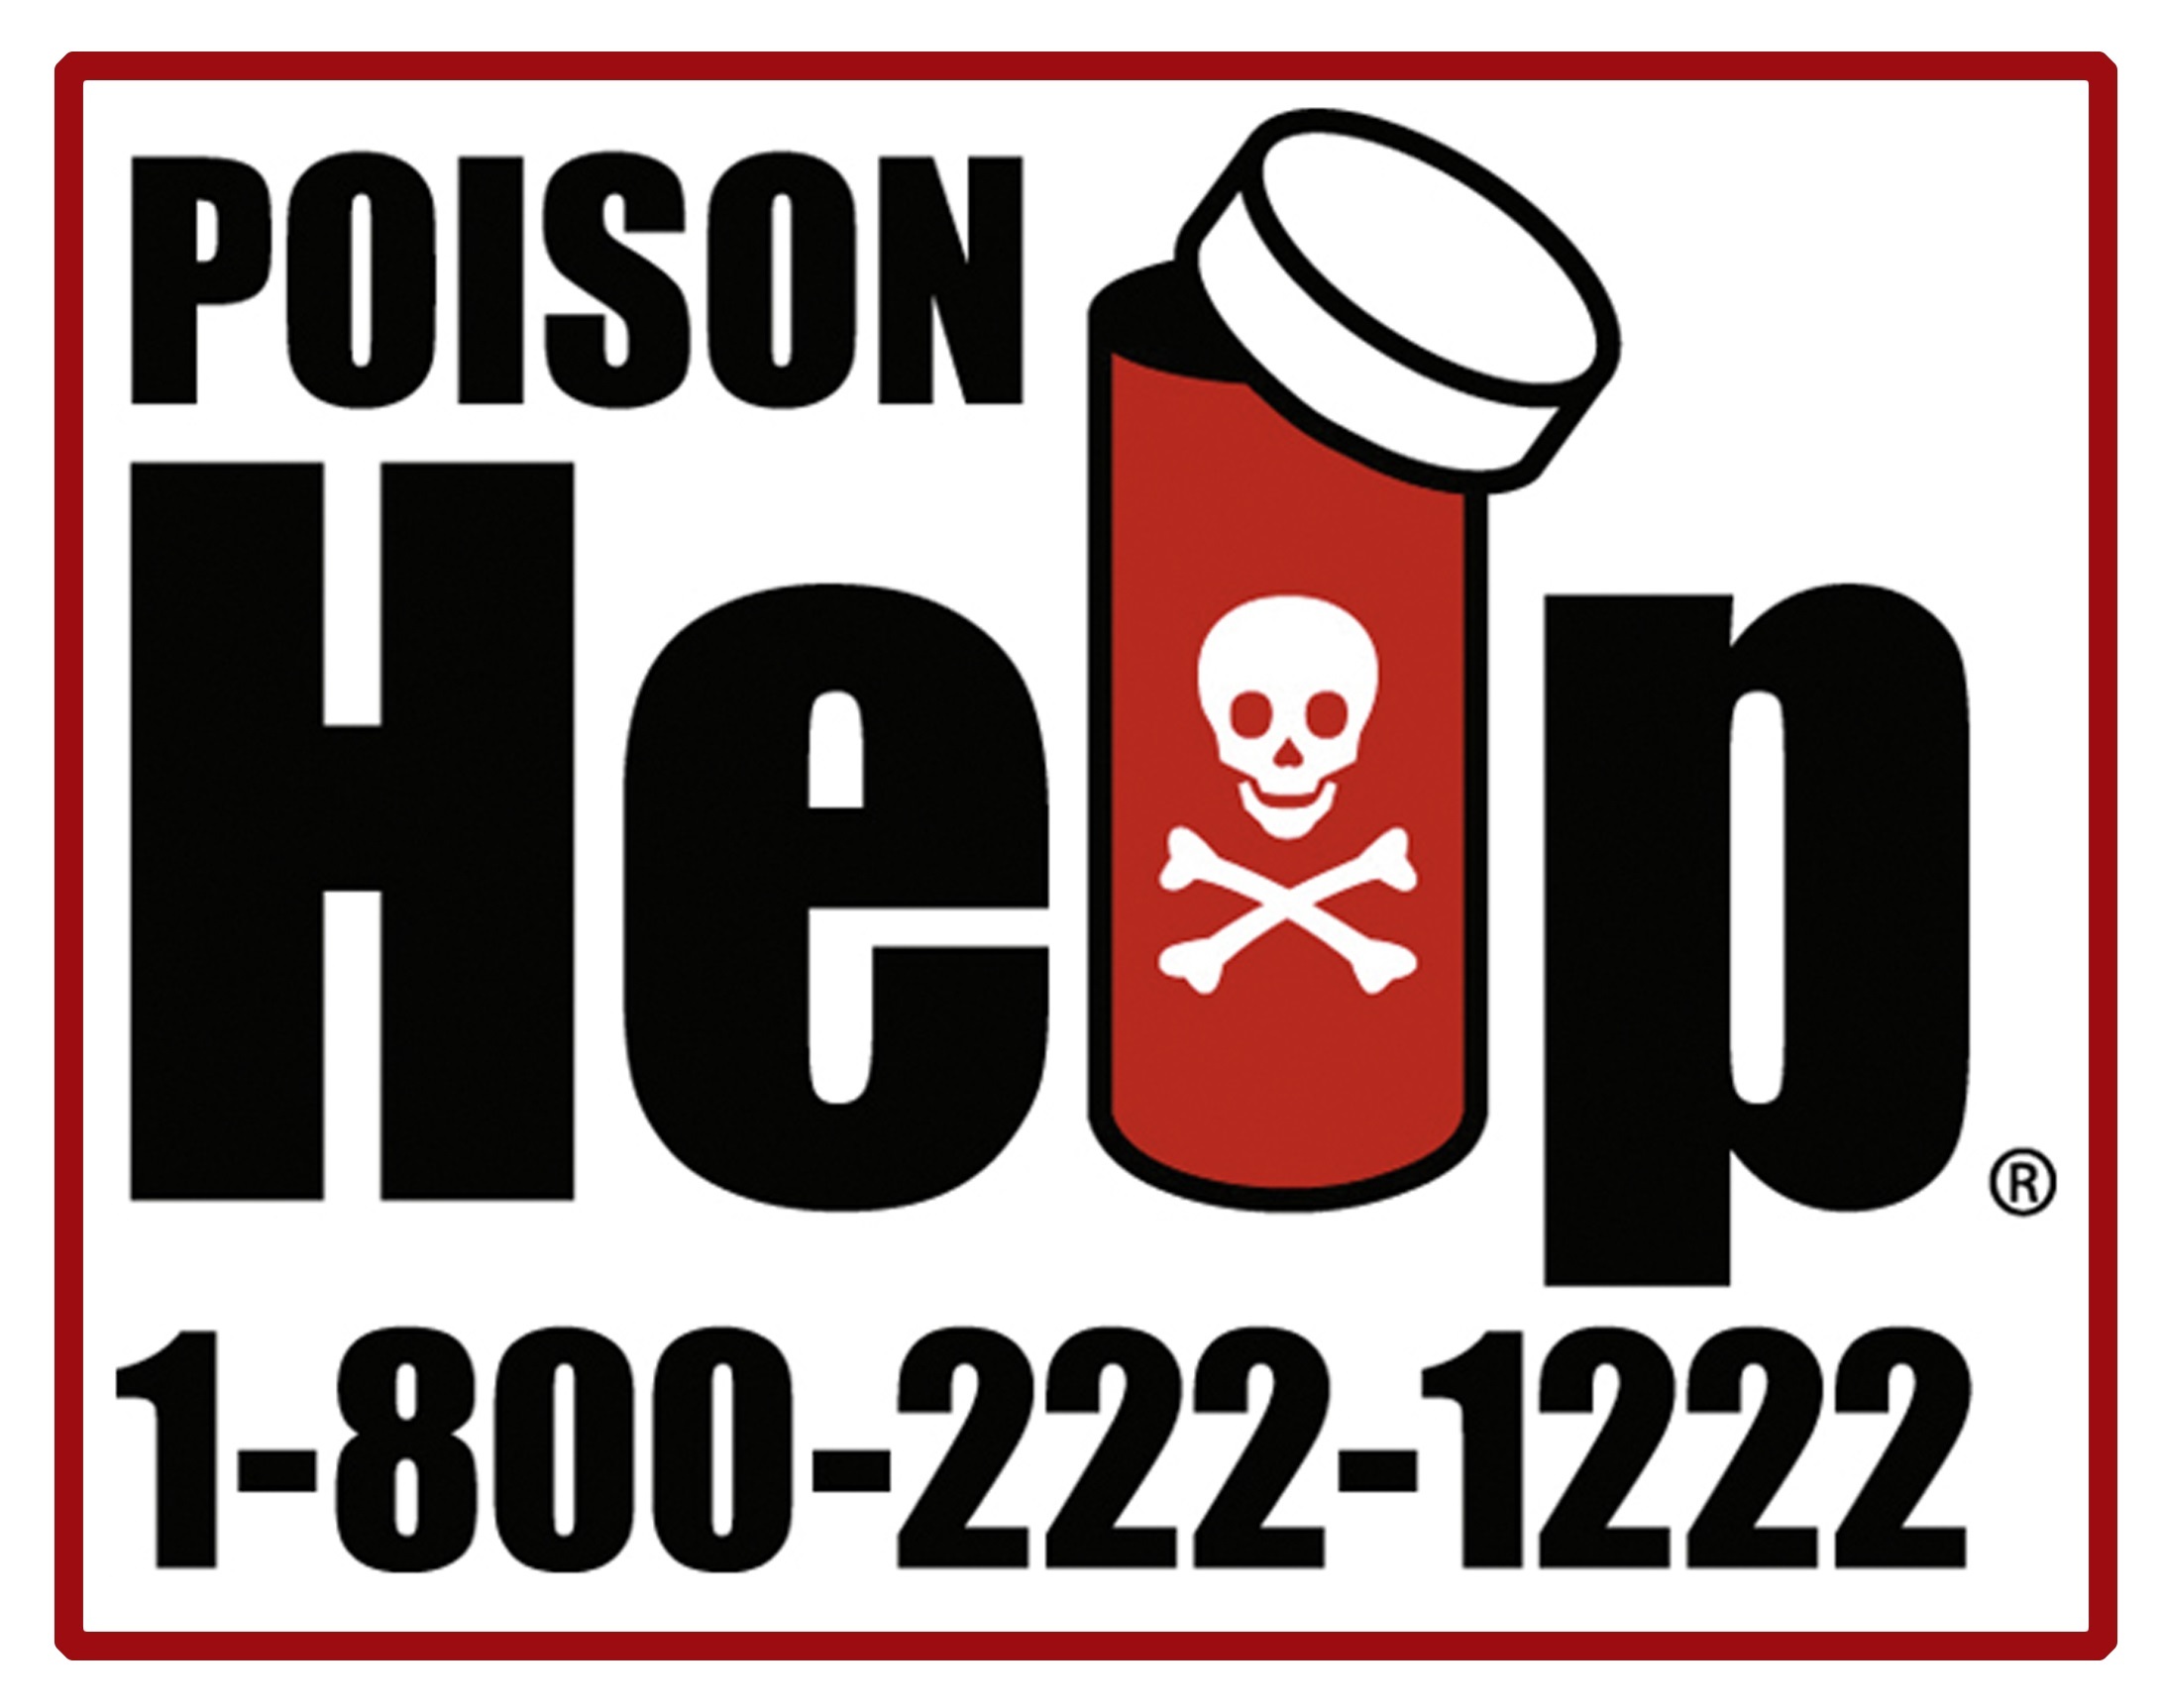 Poison help logo depicting medicine bottle, skull and crossbones and hotline number 1-800-222-1222